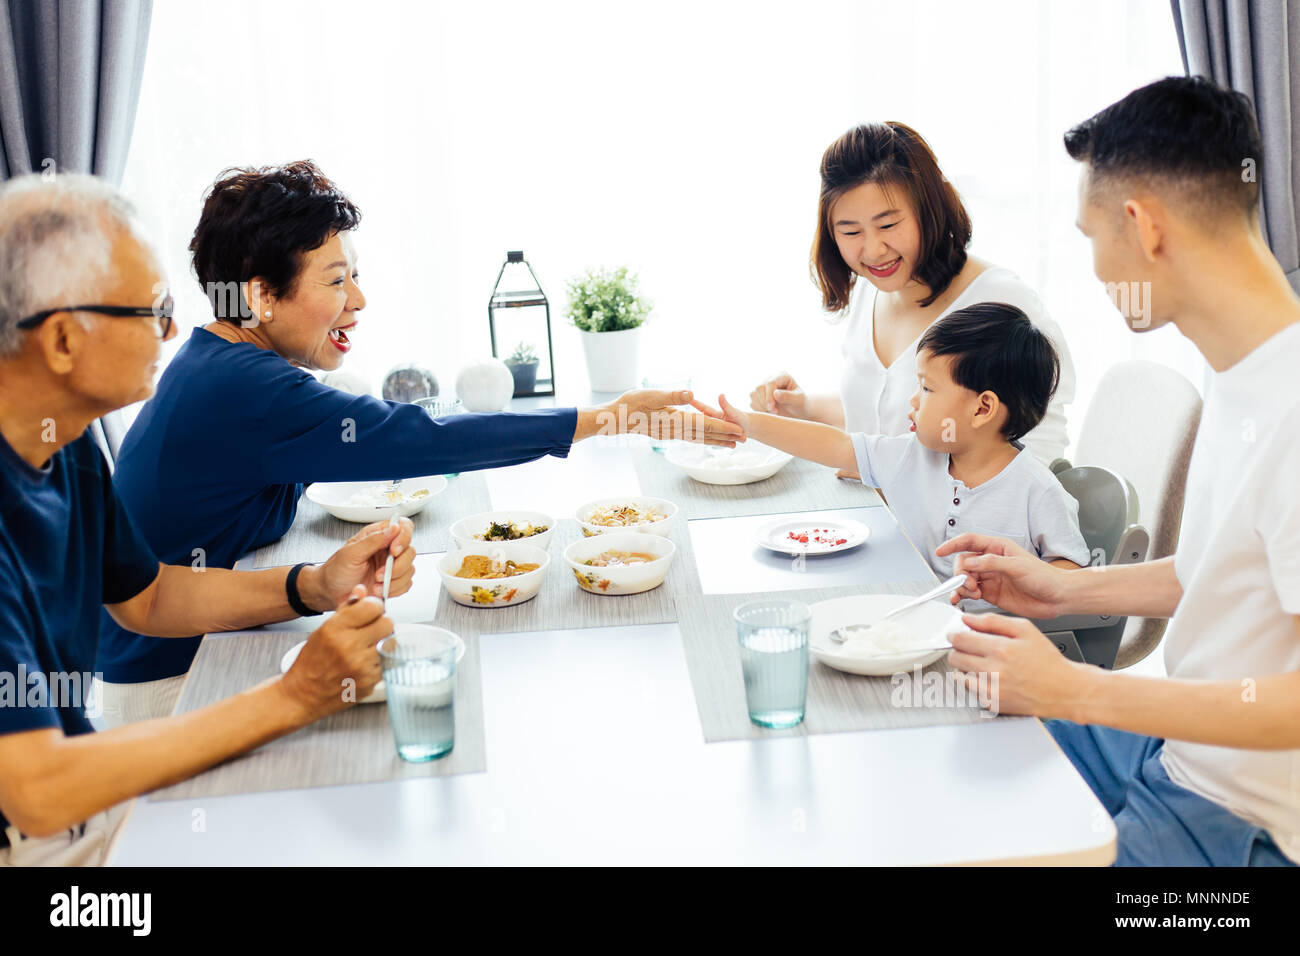 Gerne asiatische Großfamilie Abendessen zu Hause voller Lachen und Glück Stockfoto